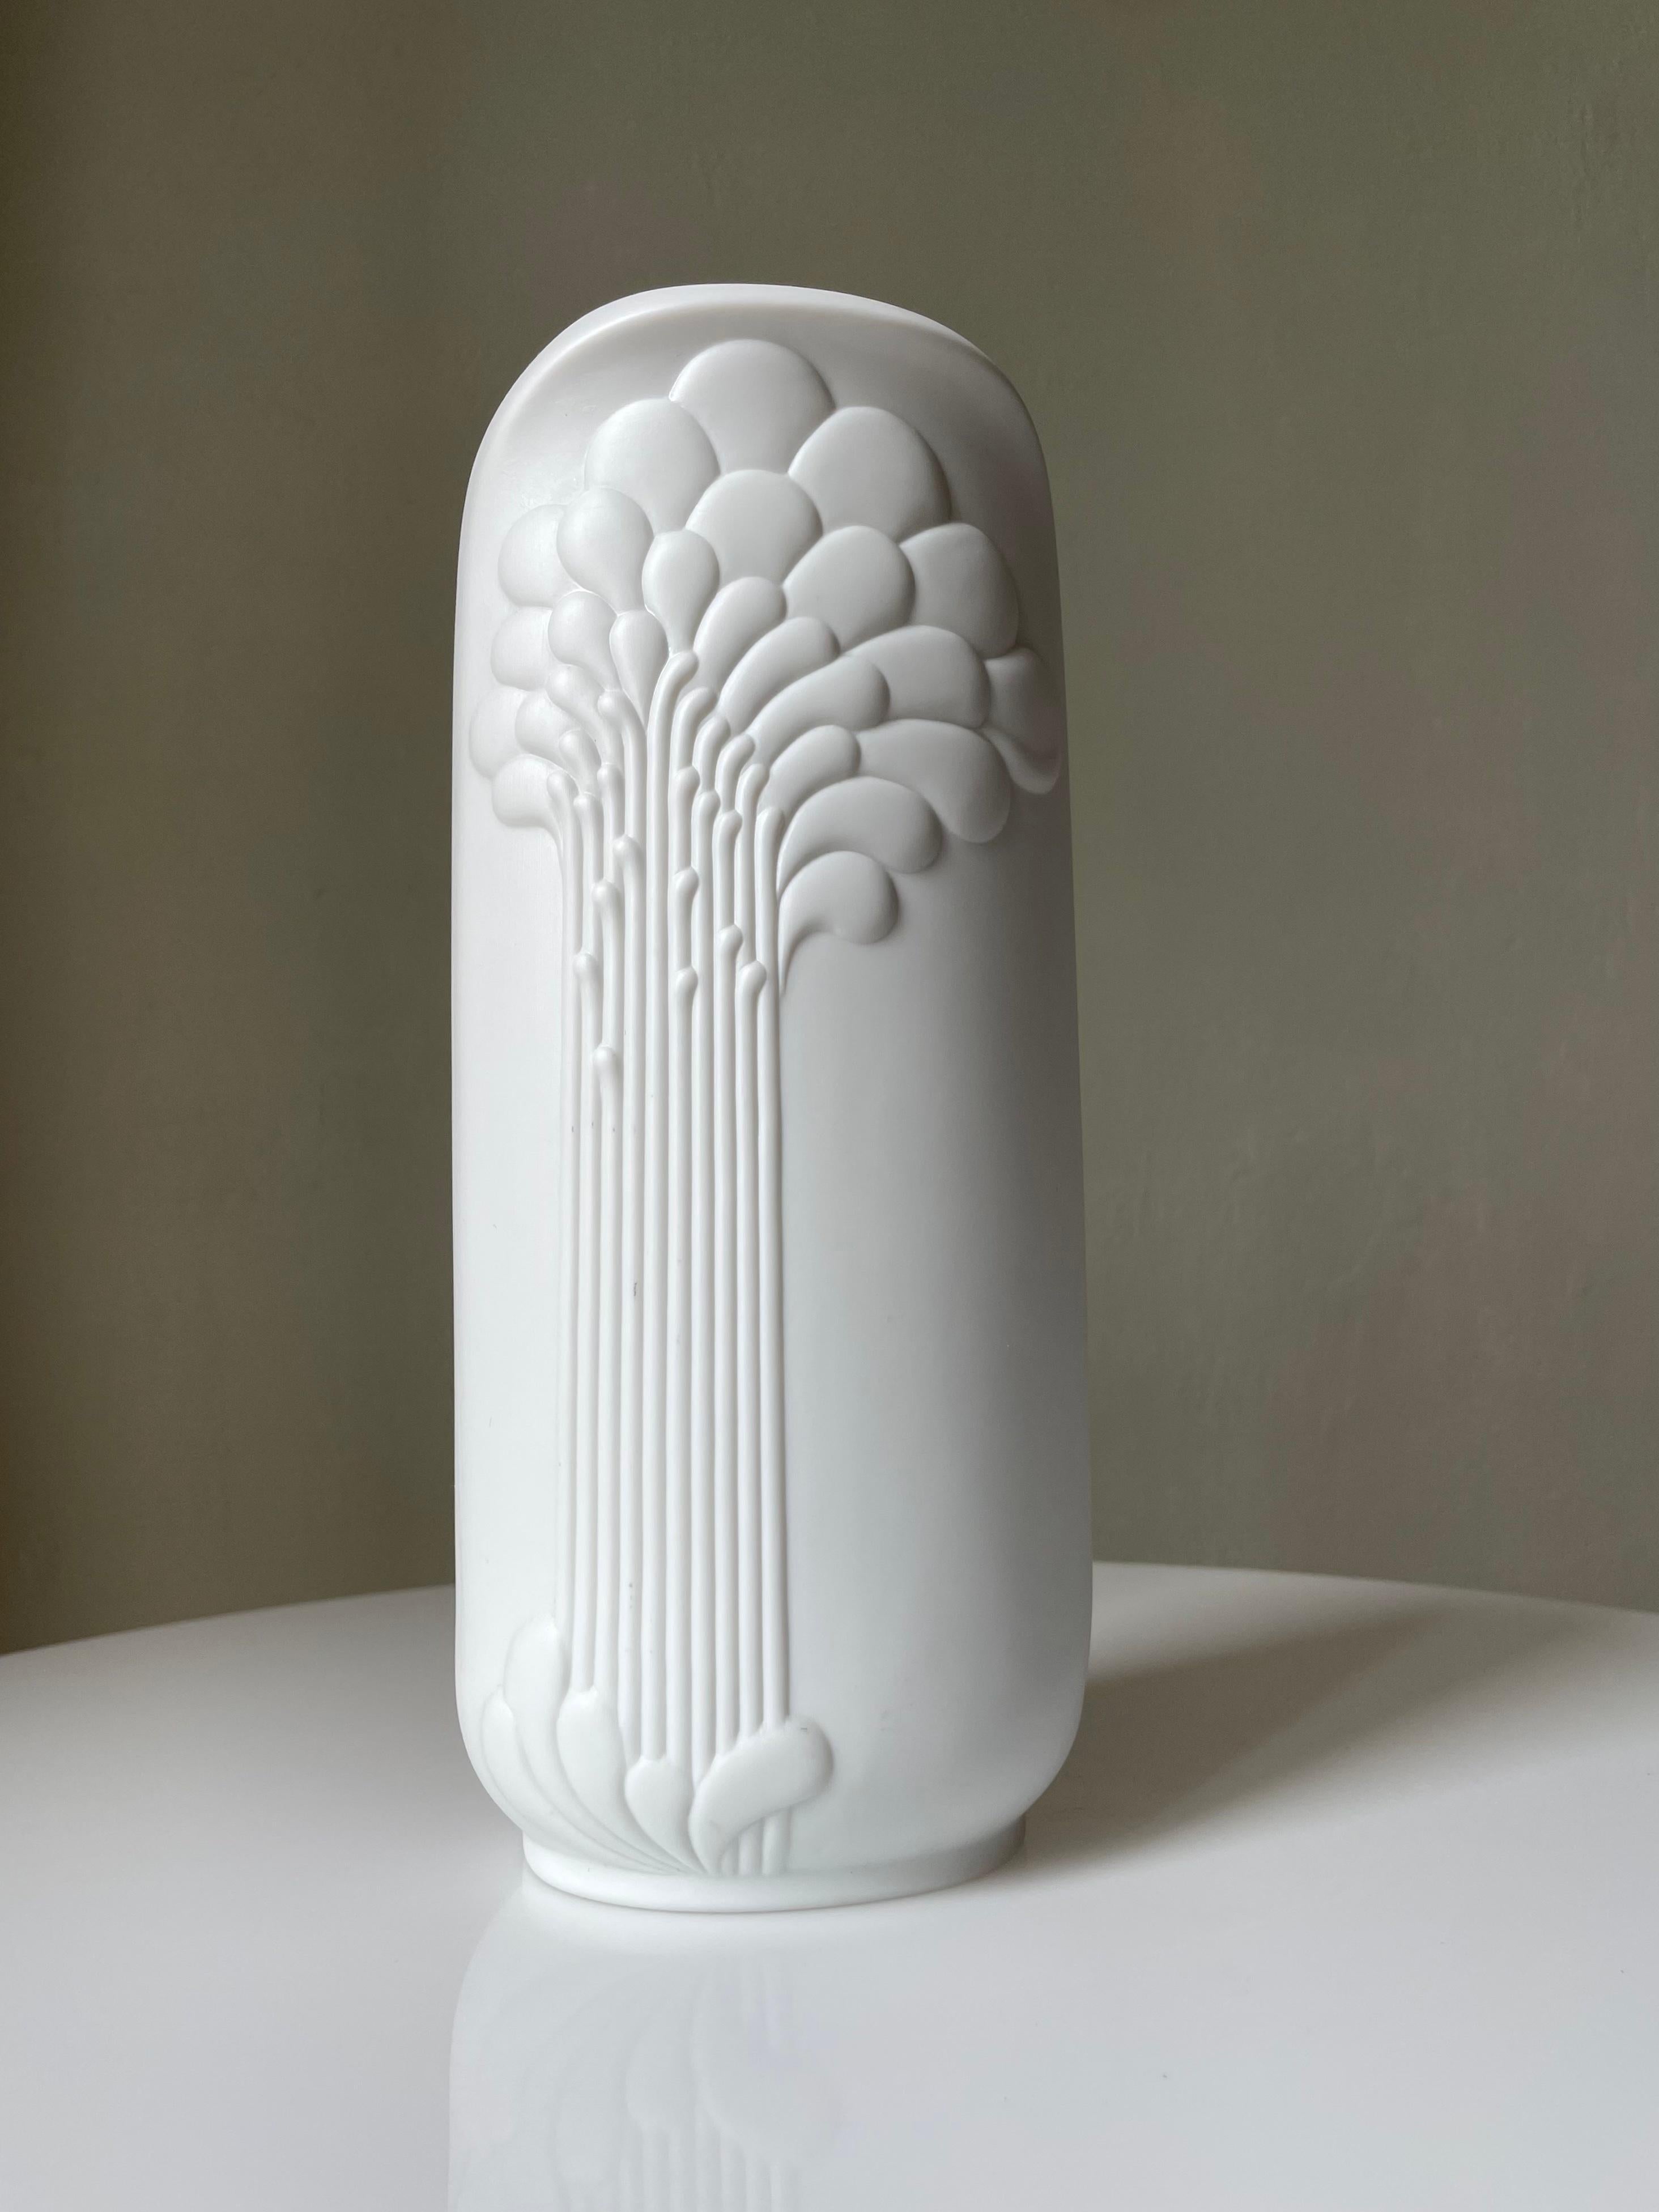 Unglazed Michaela Frey for Kaiser Tall White Art Deco Bisque Porcelain Vase, 1960s For Sale